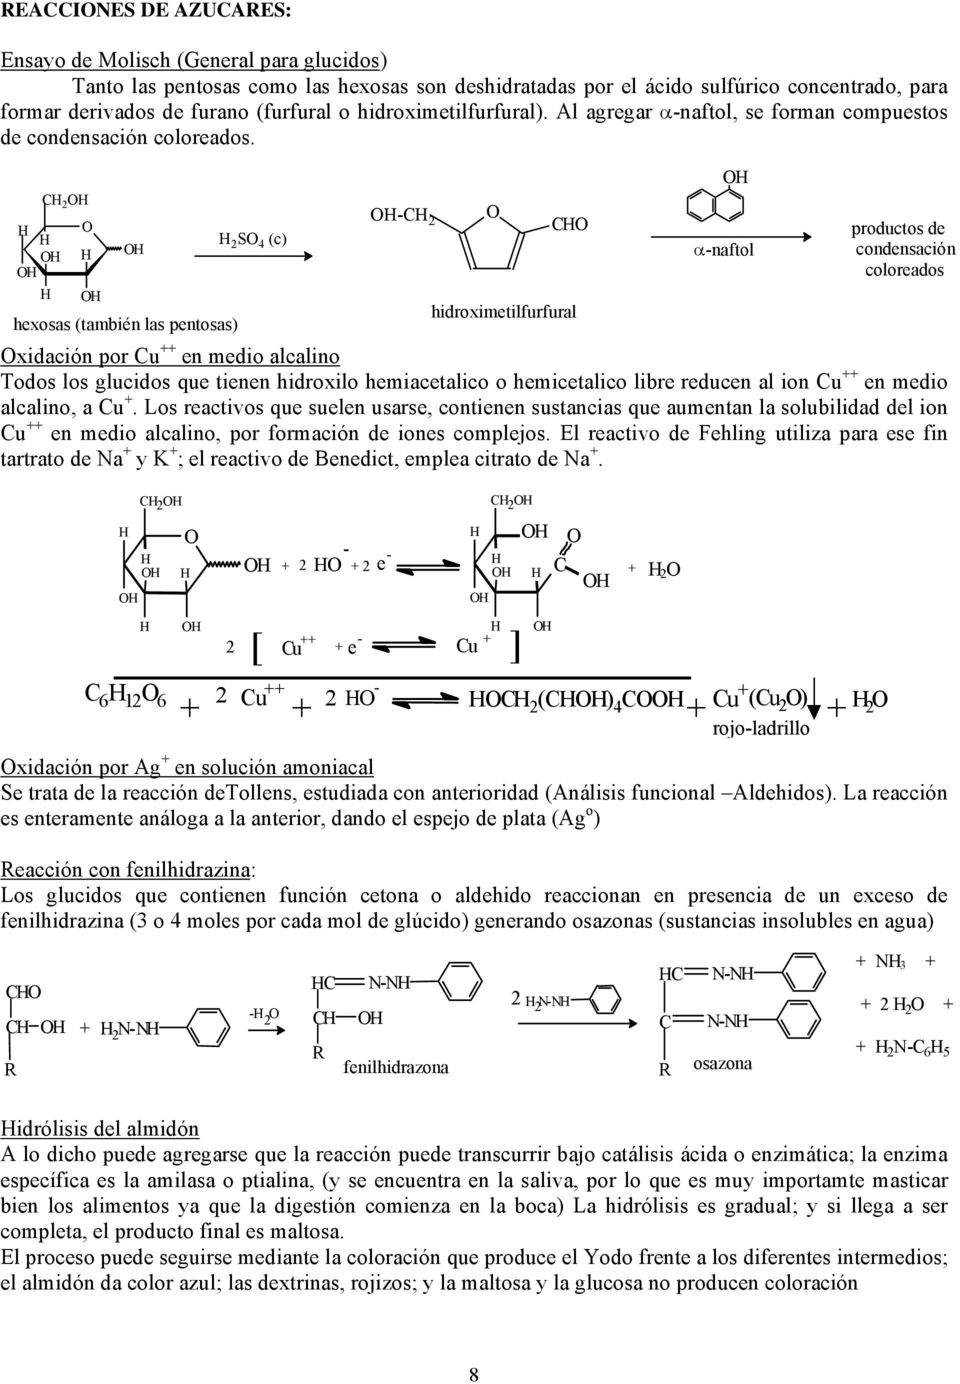 hexosas (también las pentosas) S 4 (c) - hidroximetilfurfural α-naftol productos de condensación coloreados xidación por u ++ en medio alcalino Todos los glucidos que tienen hidroxilo hemiacetalico o